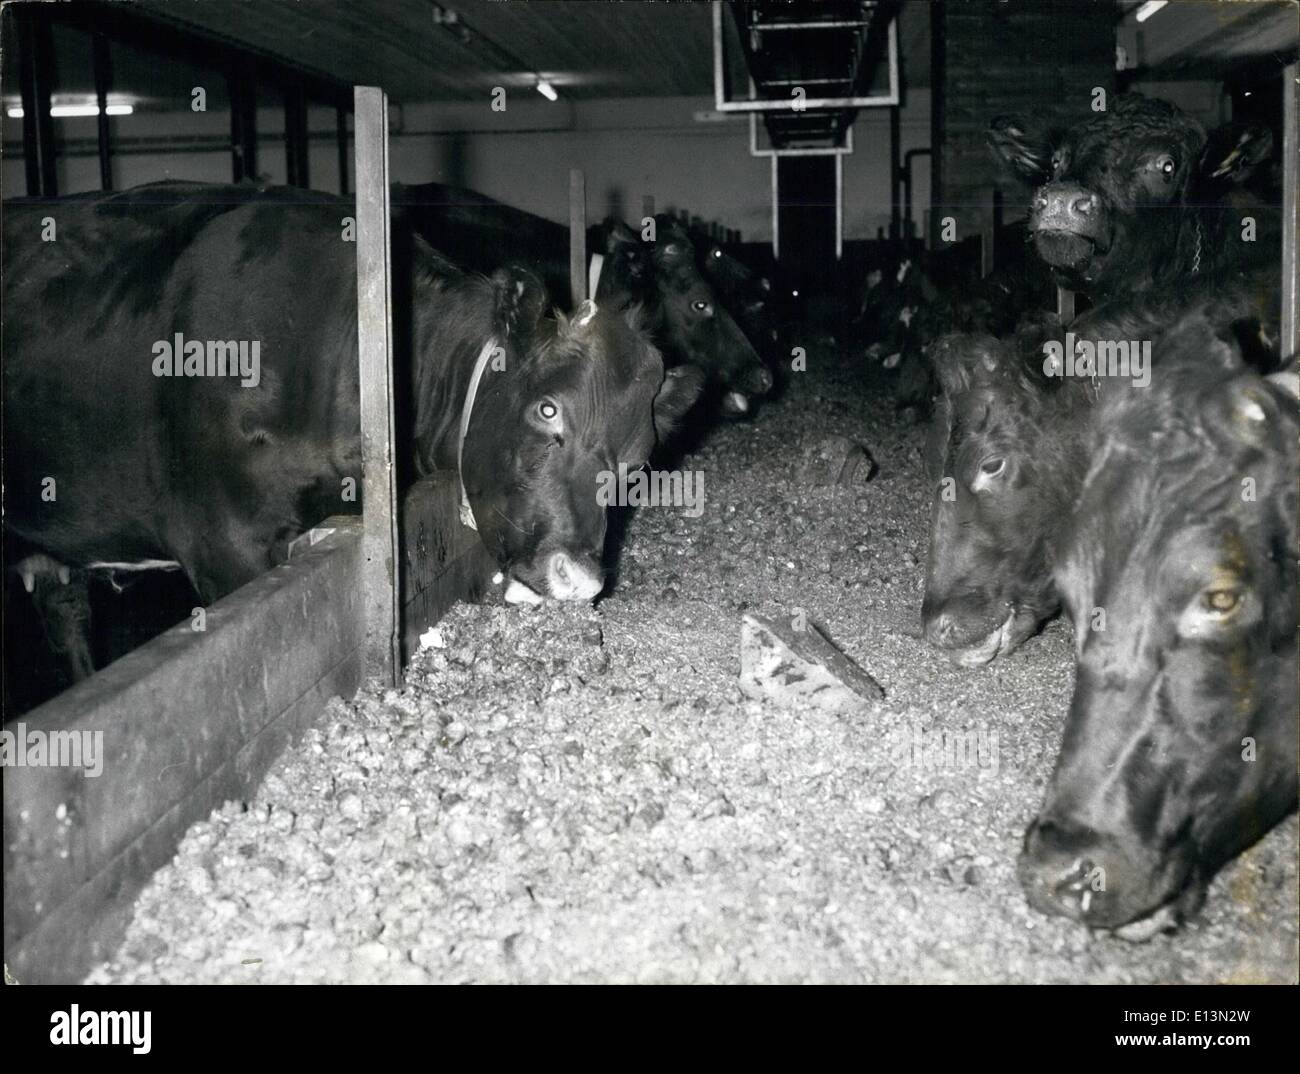 Mar 02, 2012 - Danimarca. Caseificio di mungere le mucche essendo alimentato con erba mattoni pressati in dimensioni di circa 1x1. (2x3 cm) Foto Stock